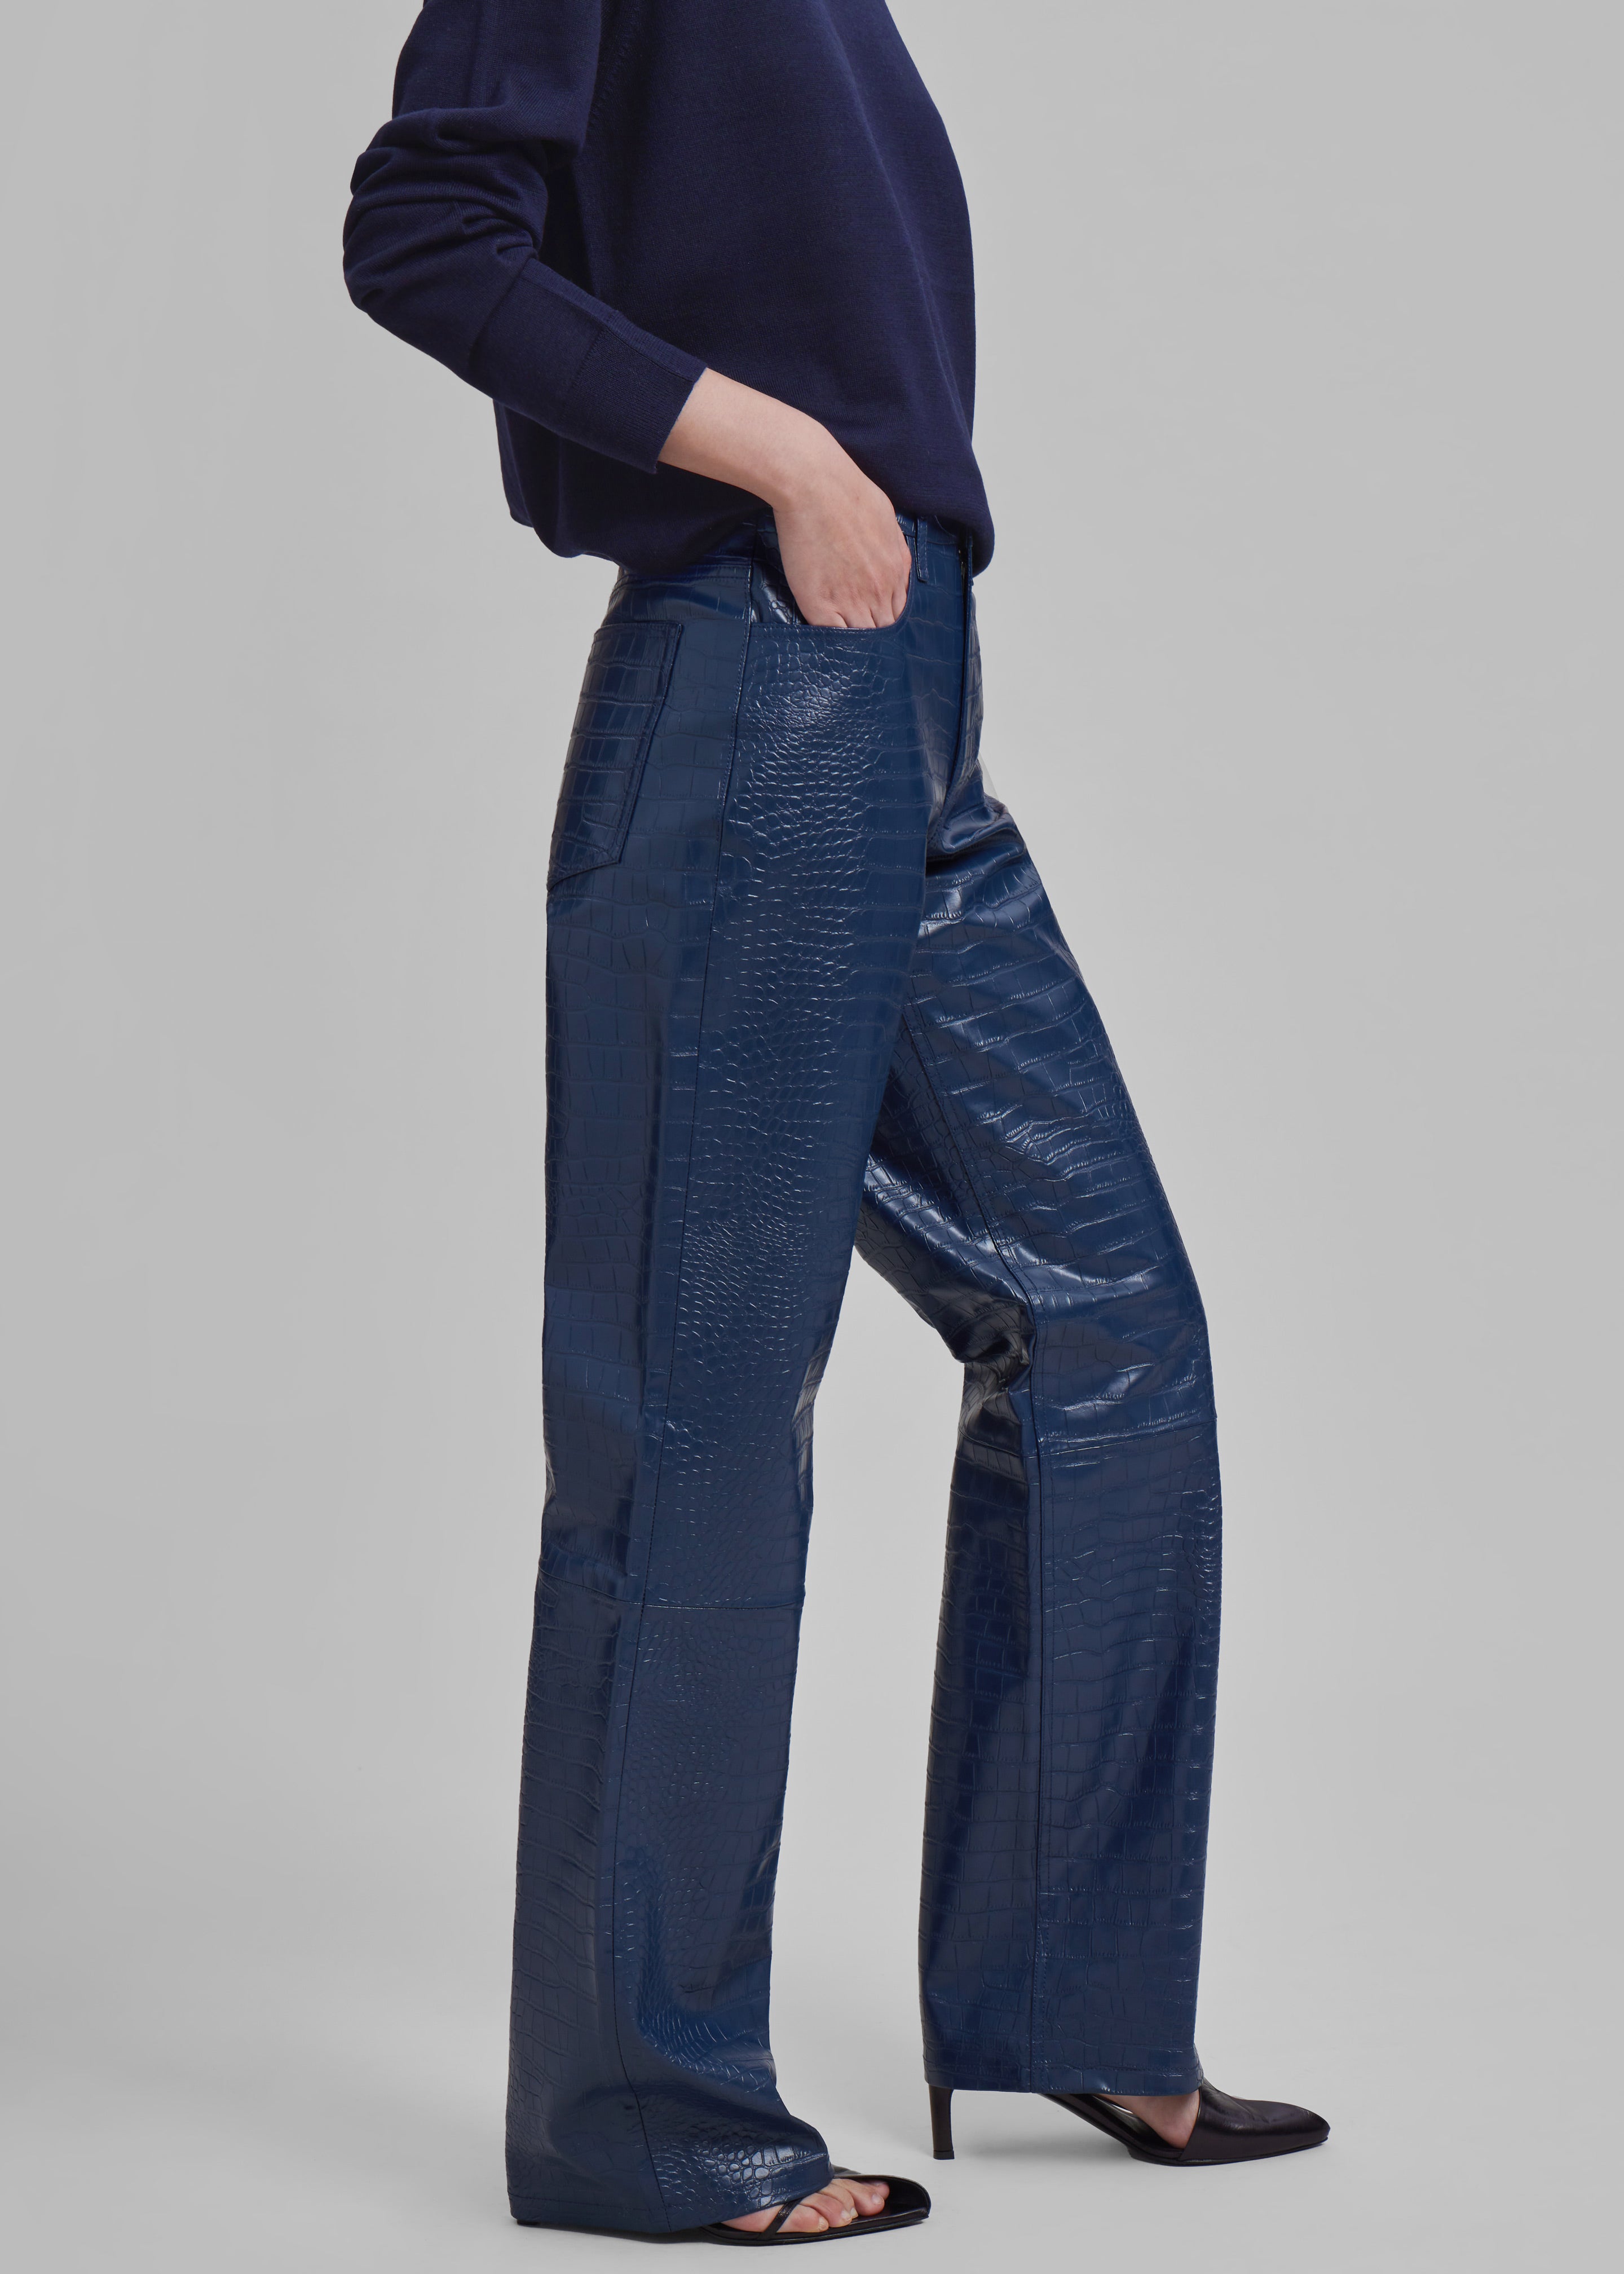 Bonnie Croc-Effect Pants - Blue - 5